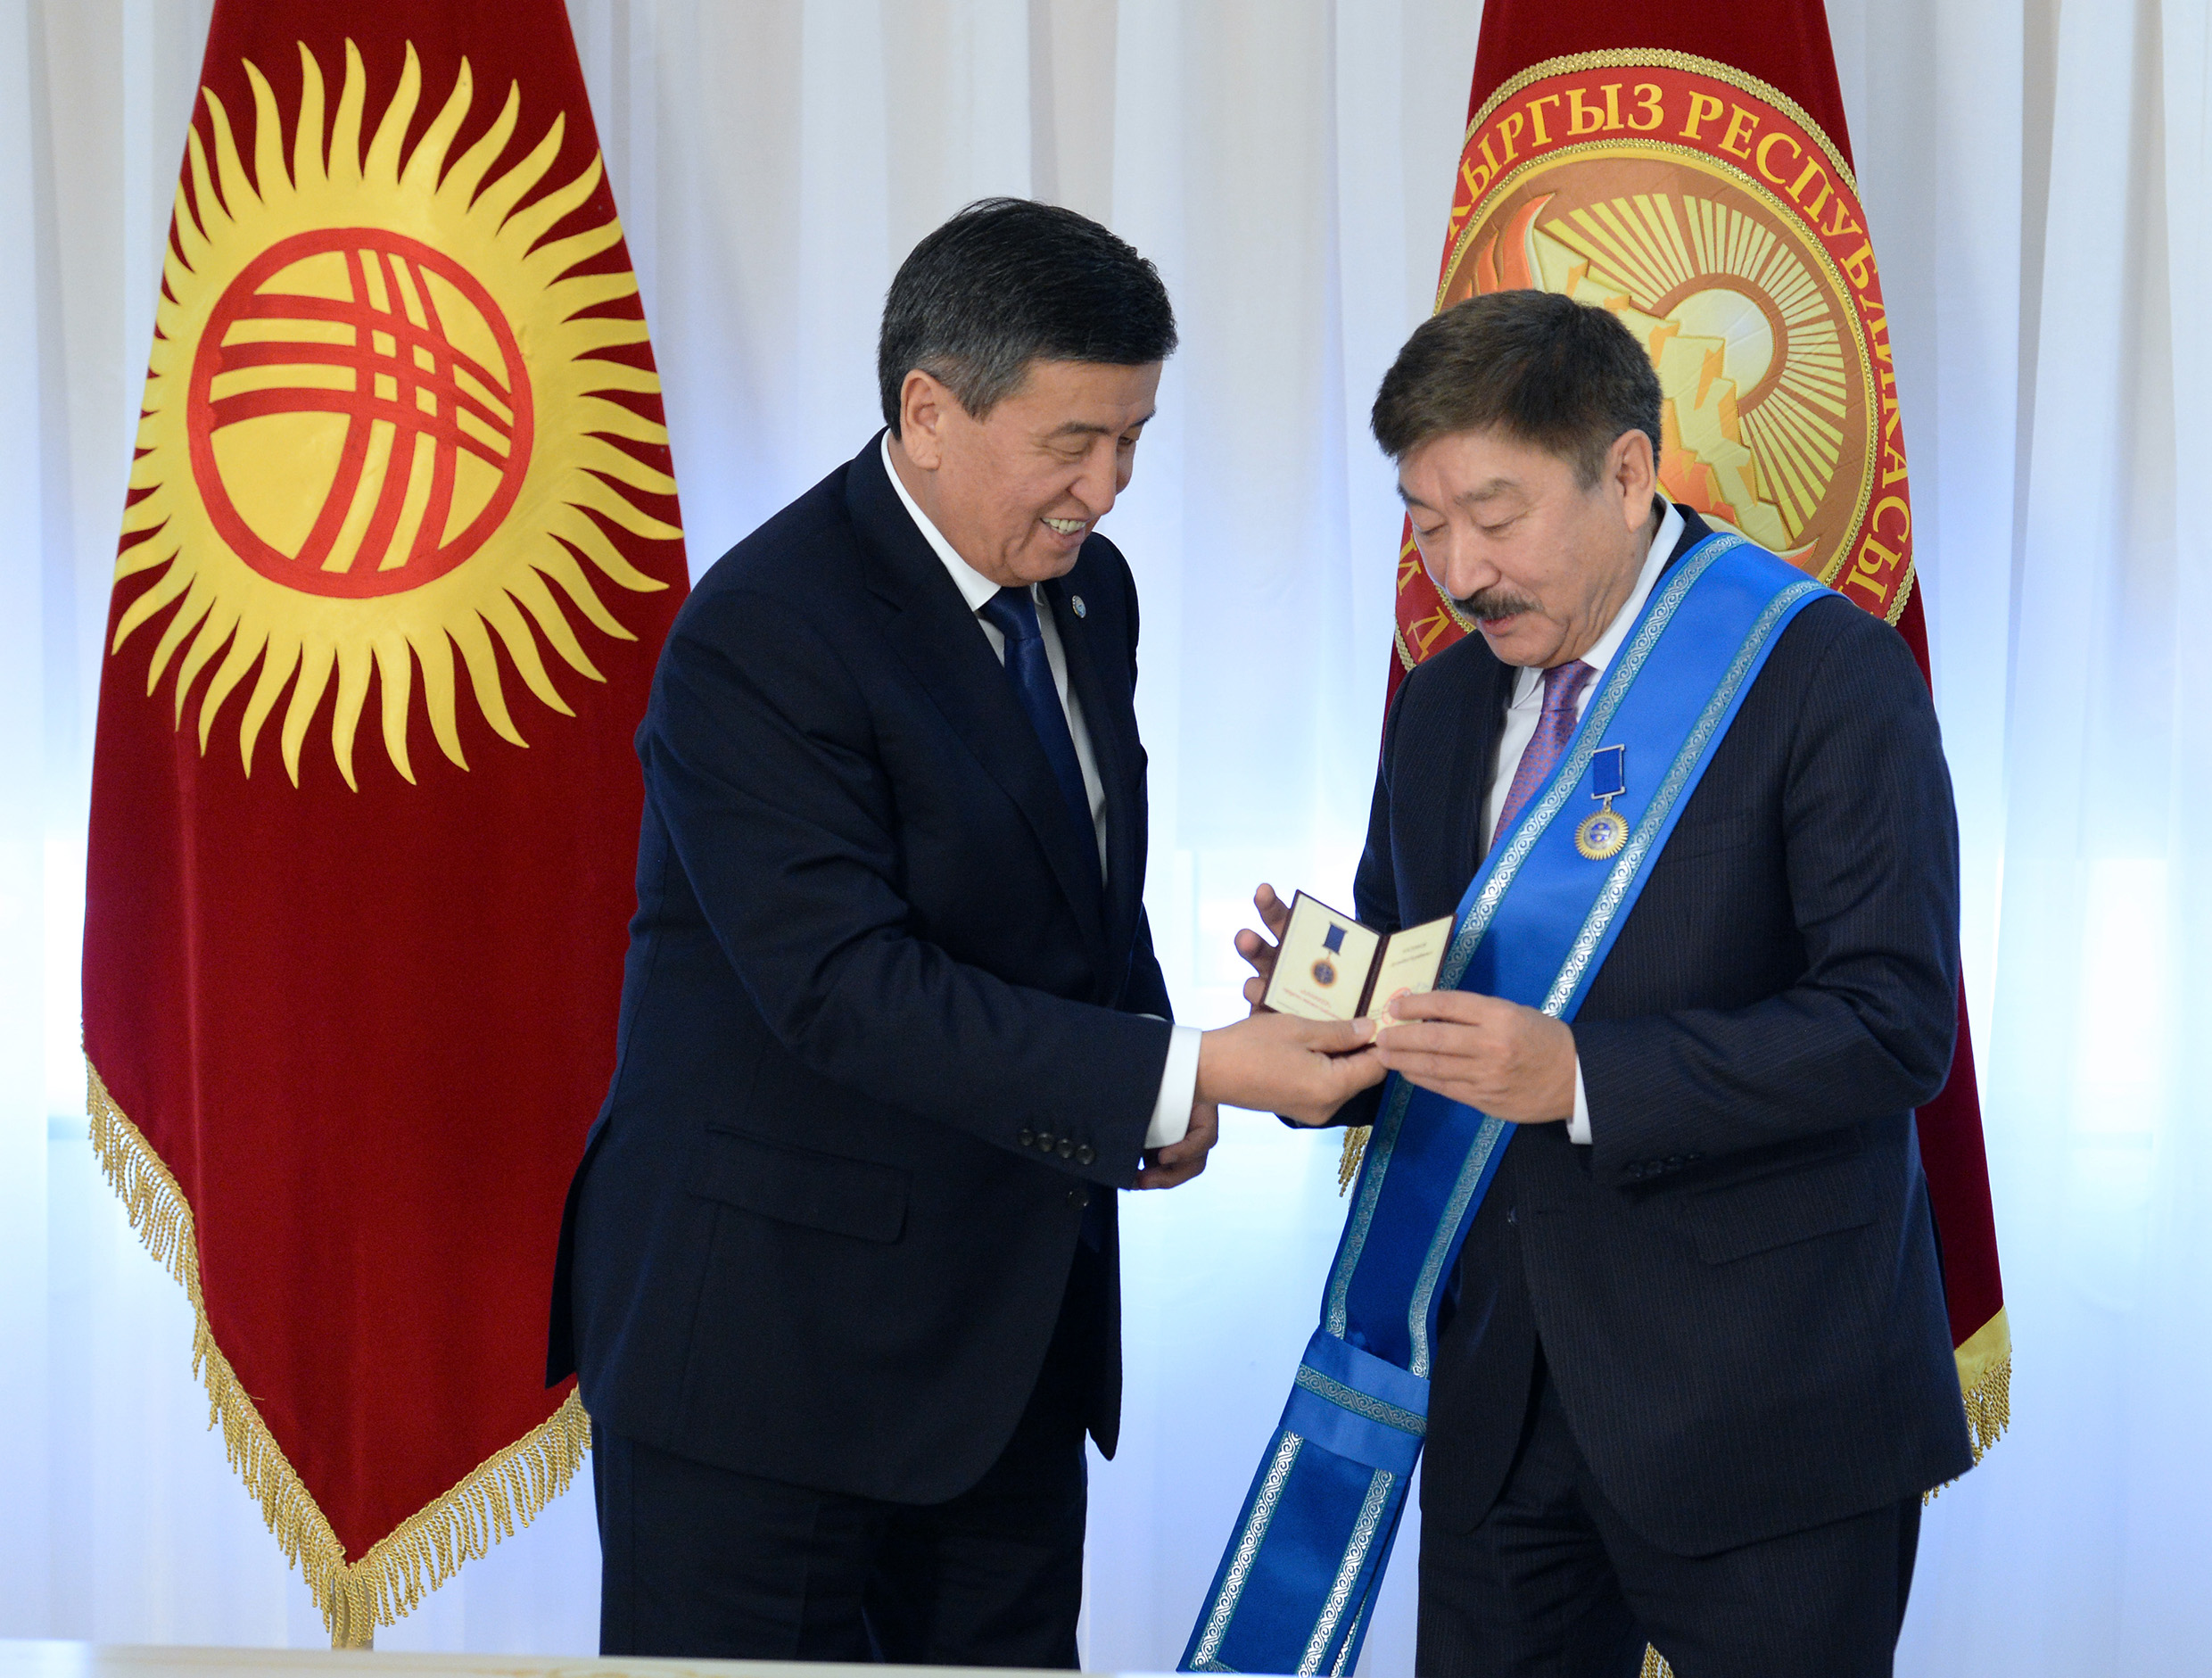 Вручения орден «Данакер» Генеральному секретарю ТЮРКСОЙ Дусанбаю Касеинову от 3 октября 2018 года